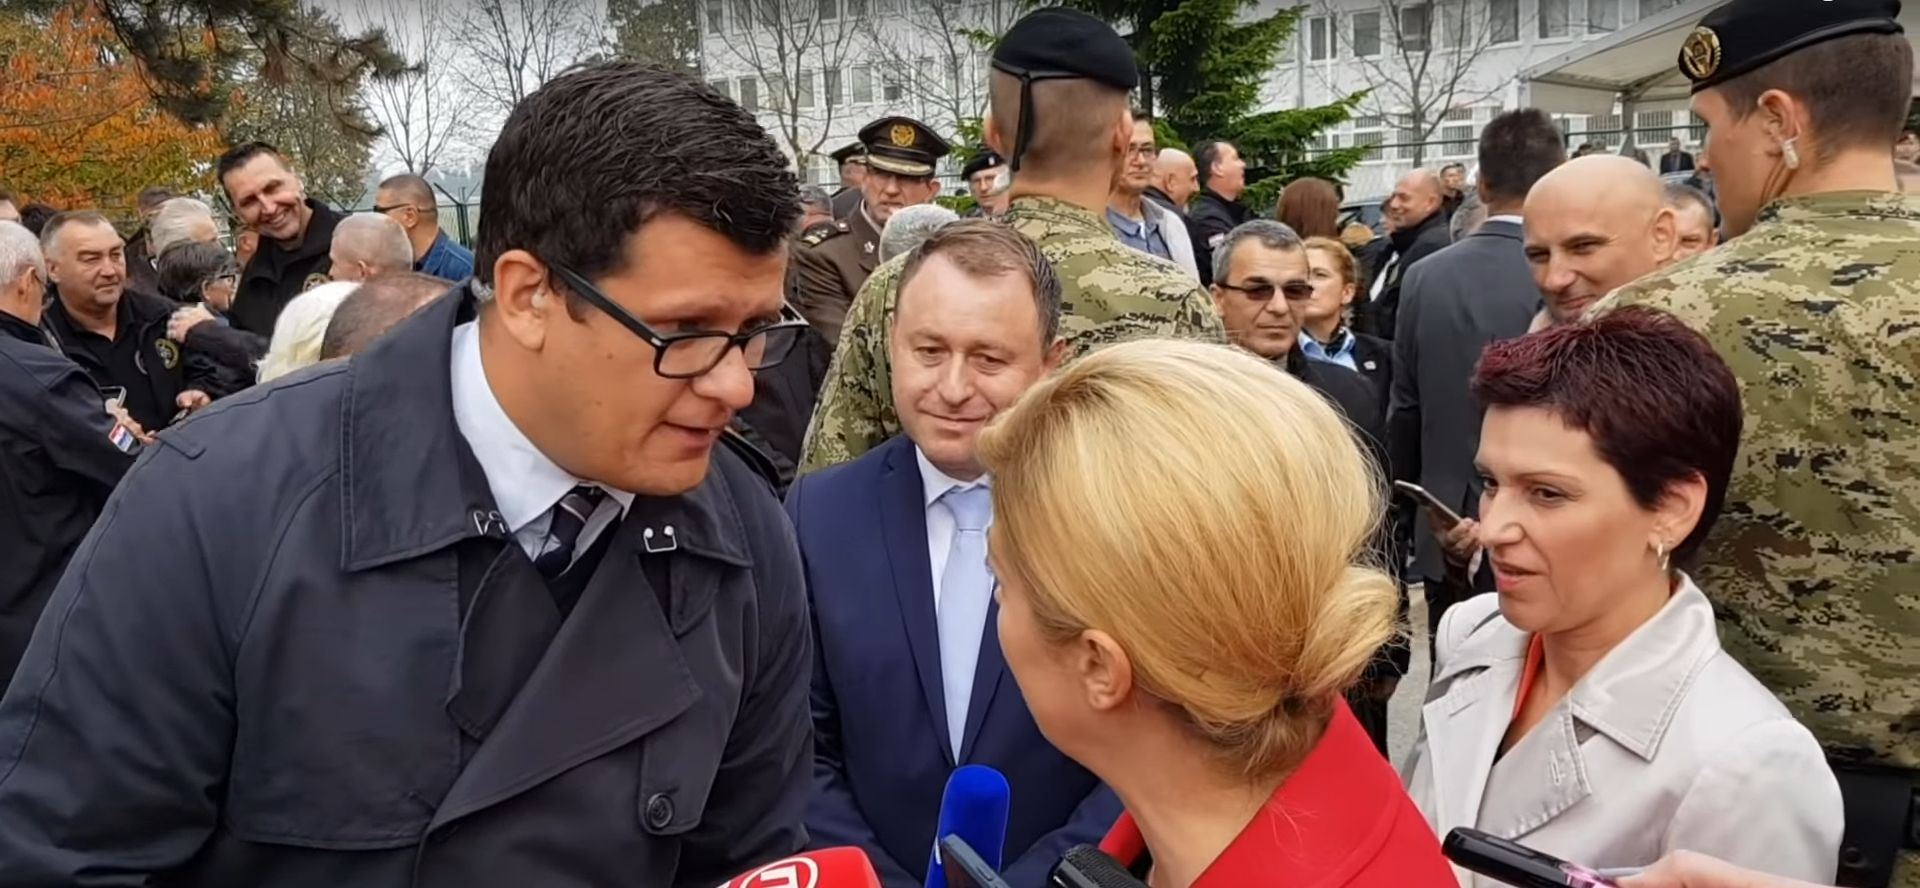 Hrvoje Krešić kojem je predsjednica pokušala oteti mikrofon novinar godine u izboru HND-a